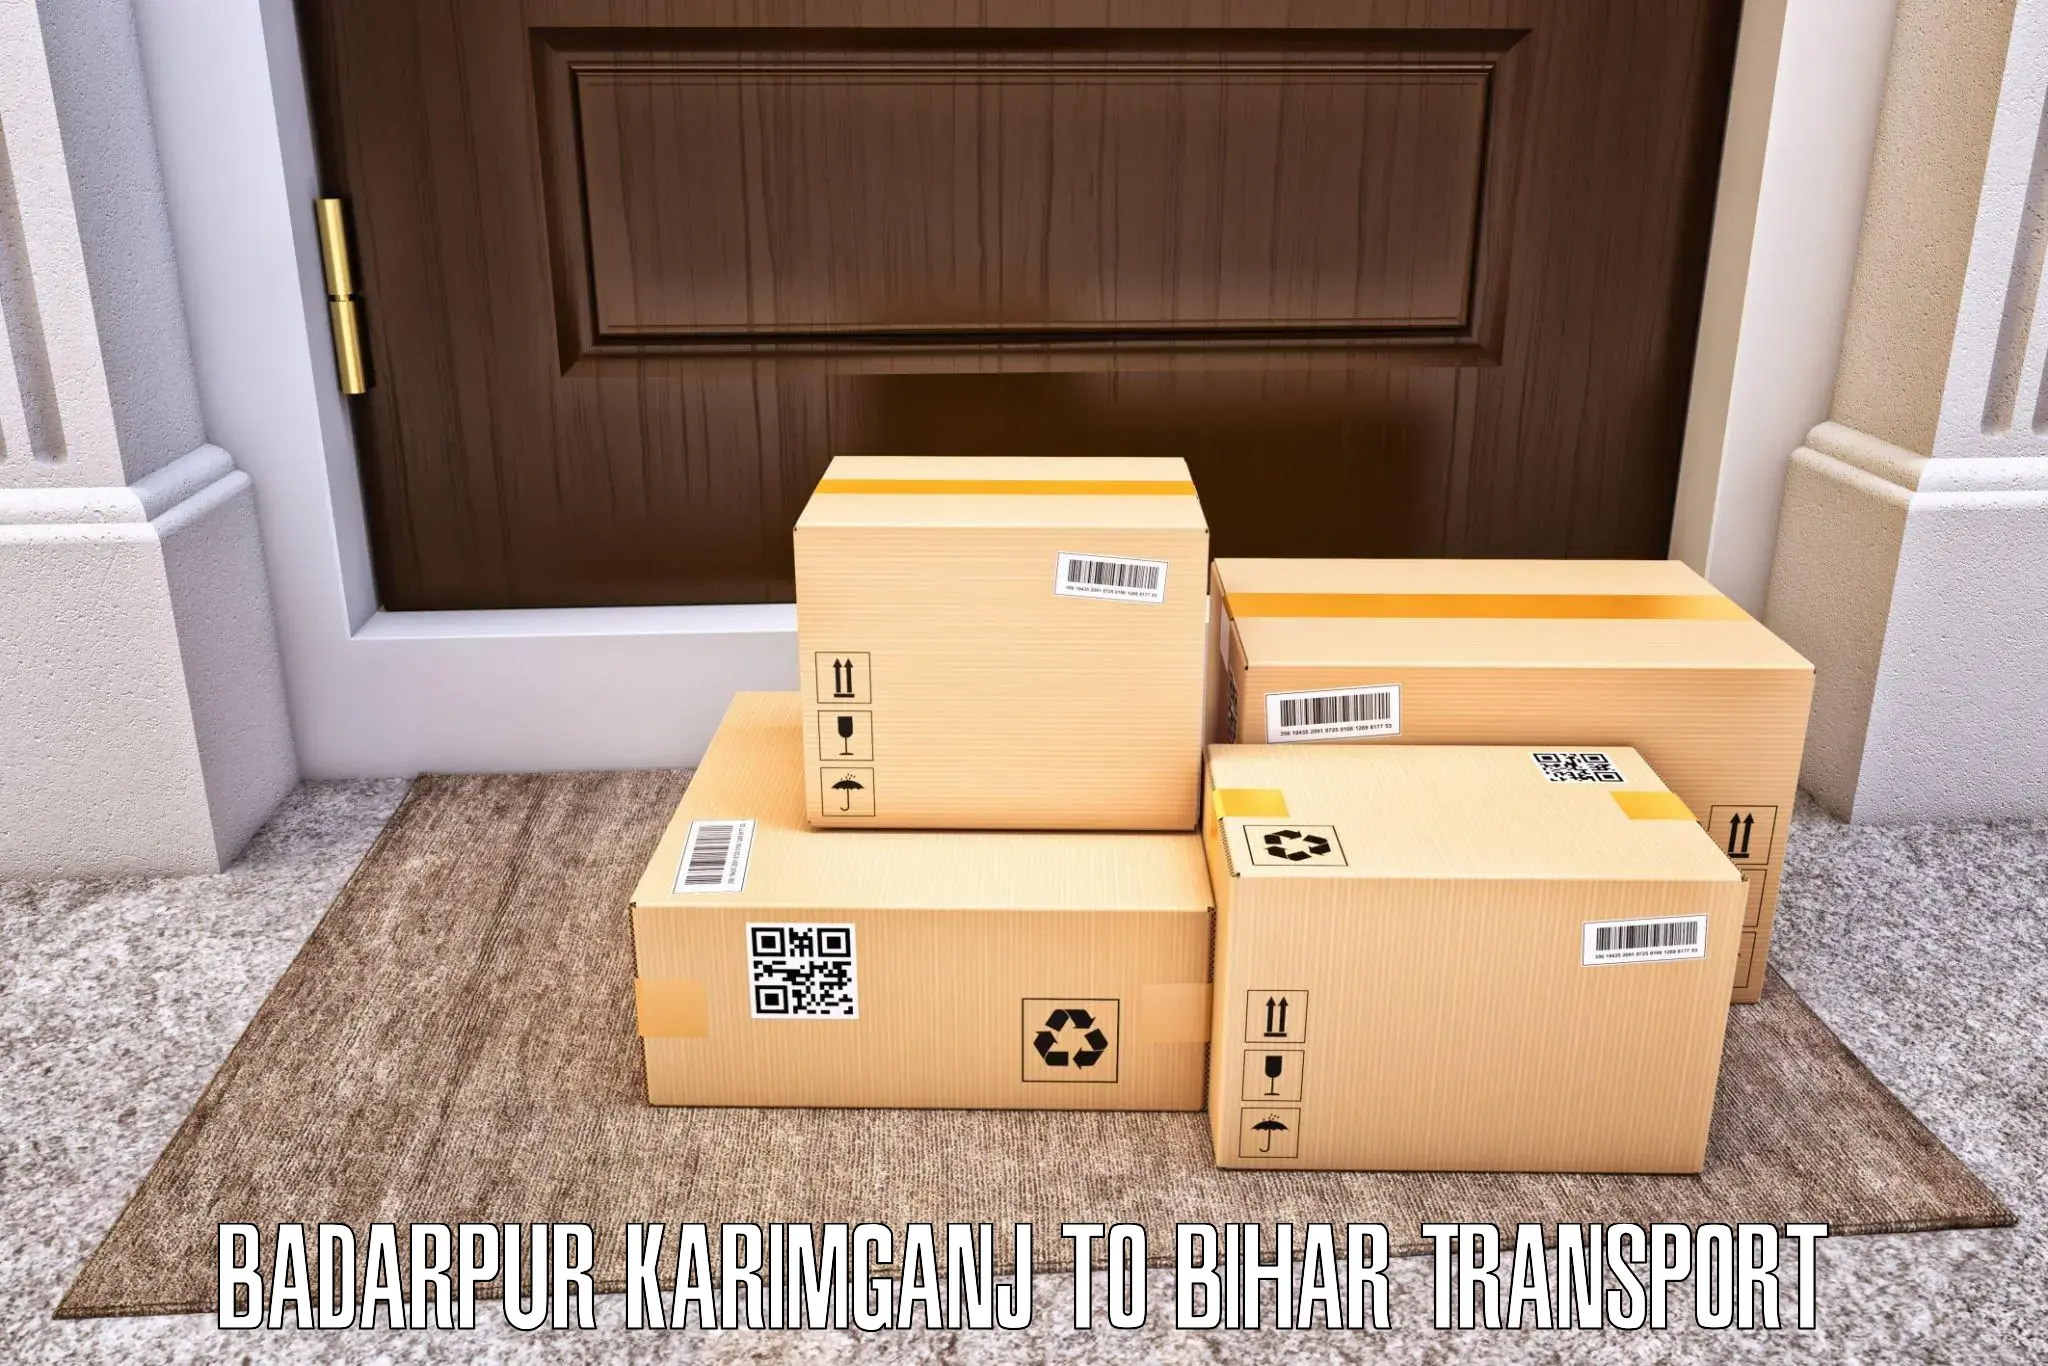 Daily parcel service transport Badarpur Karimganj to Brahmapur